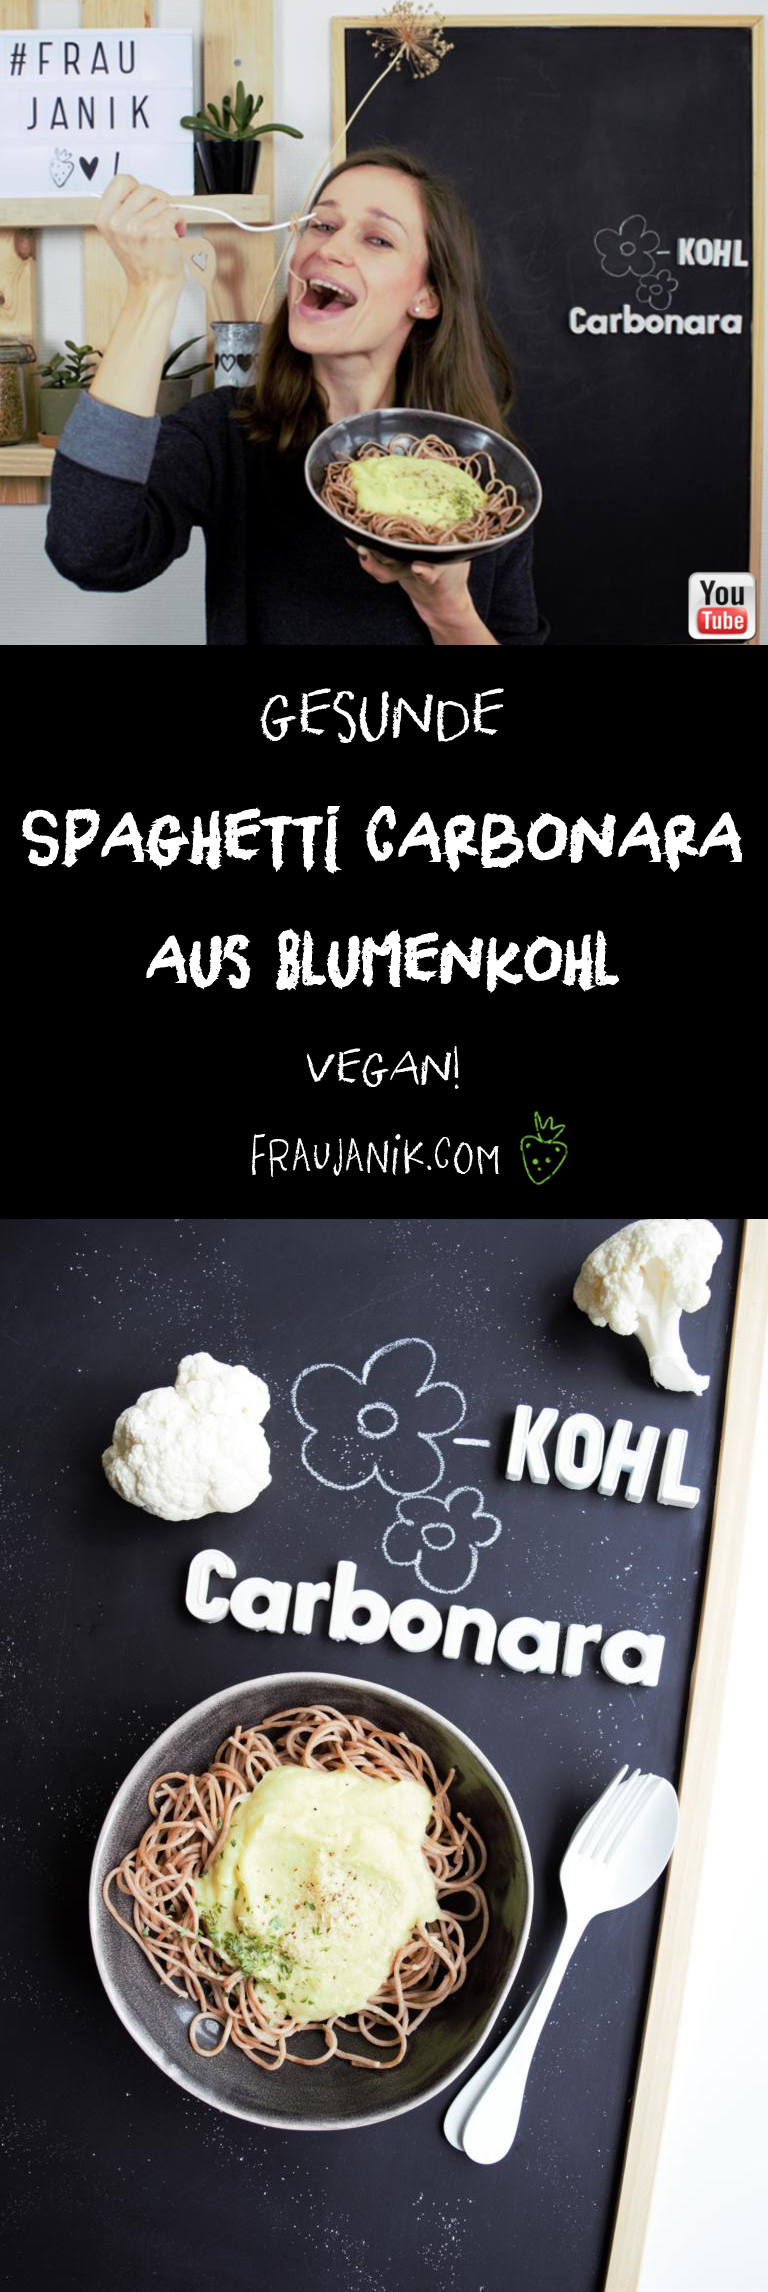 Blumenkohl Carbonara vegan